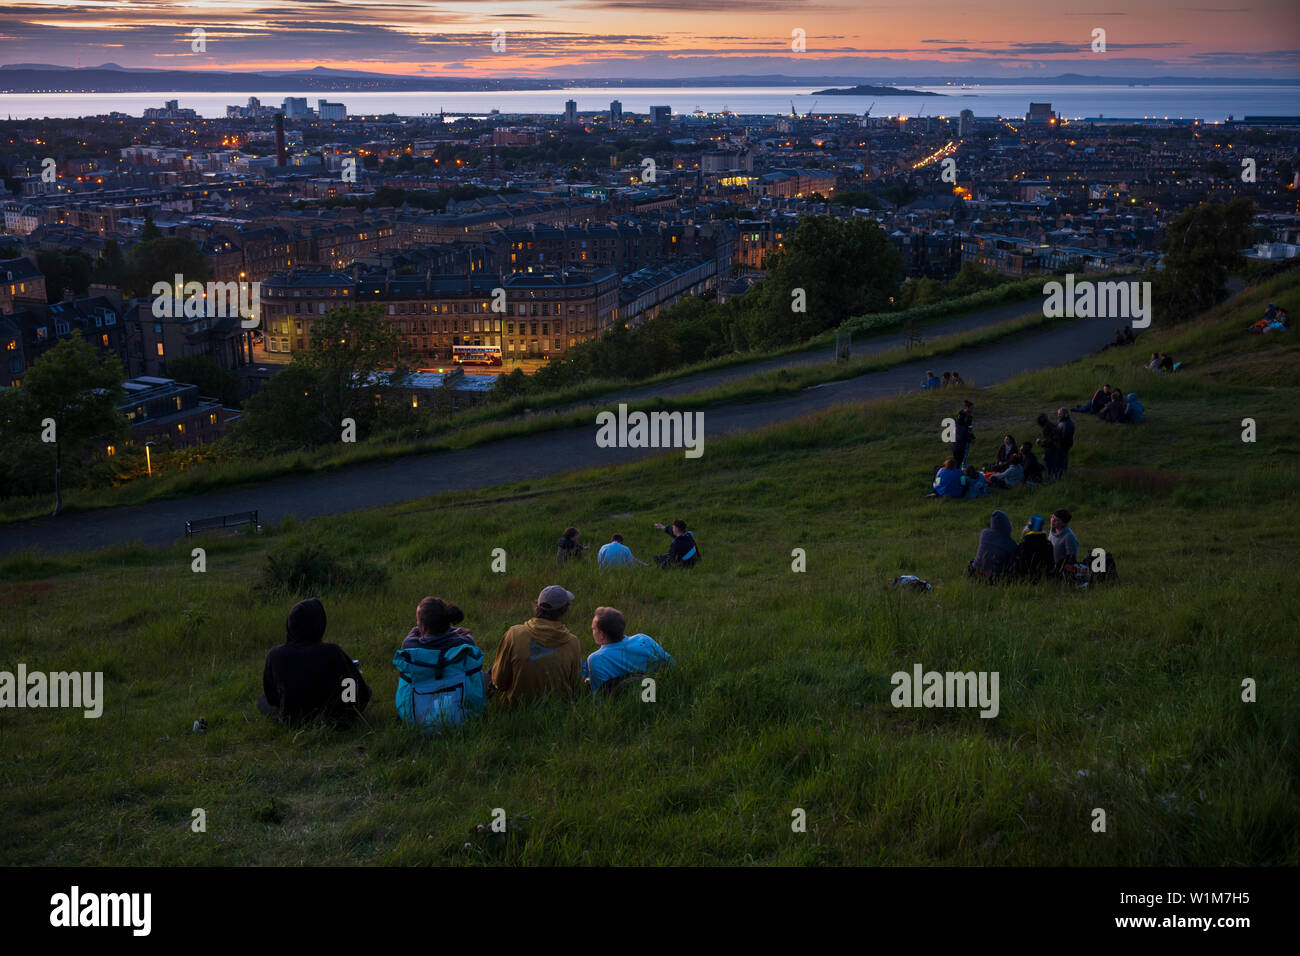 Picknicken beobachten Sie den Sonnenuntergang vom Calton Hill, ein UNESCO-Weltkulturerbe in Edinburgh, Schottland. Stockfoto